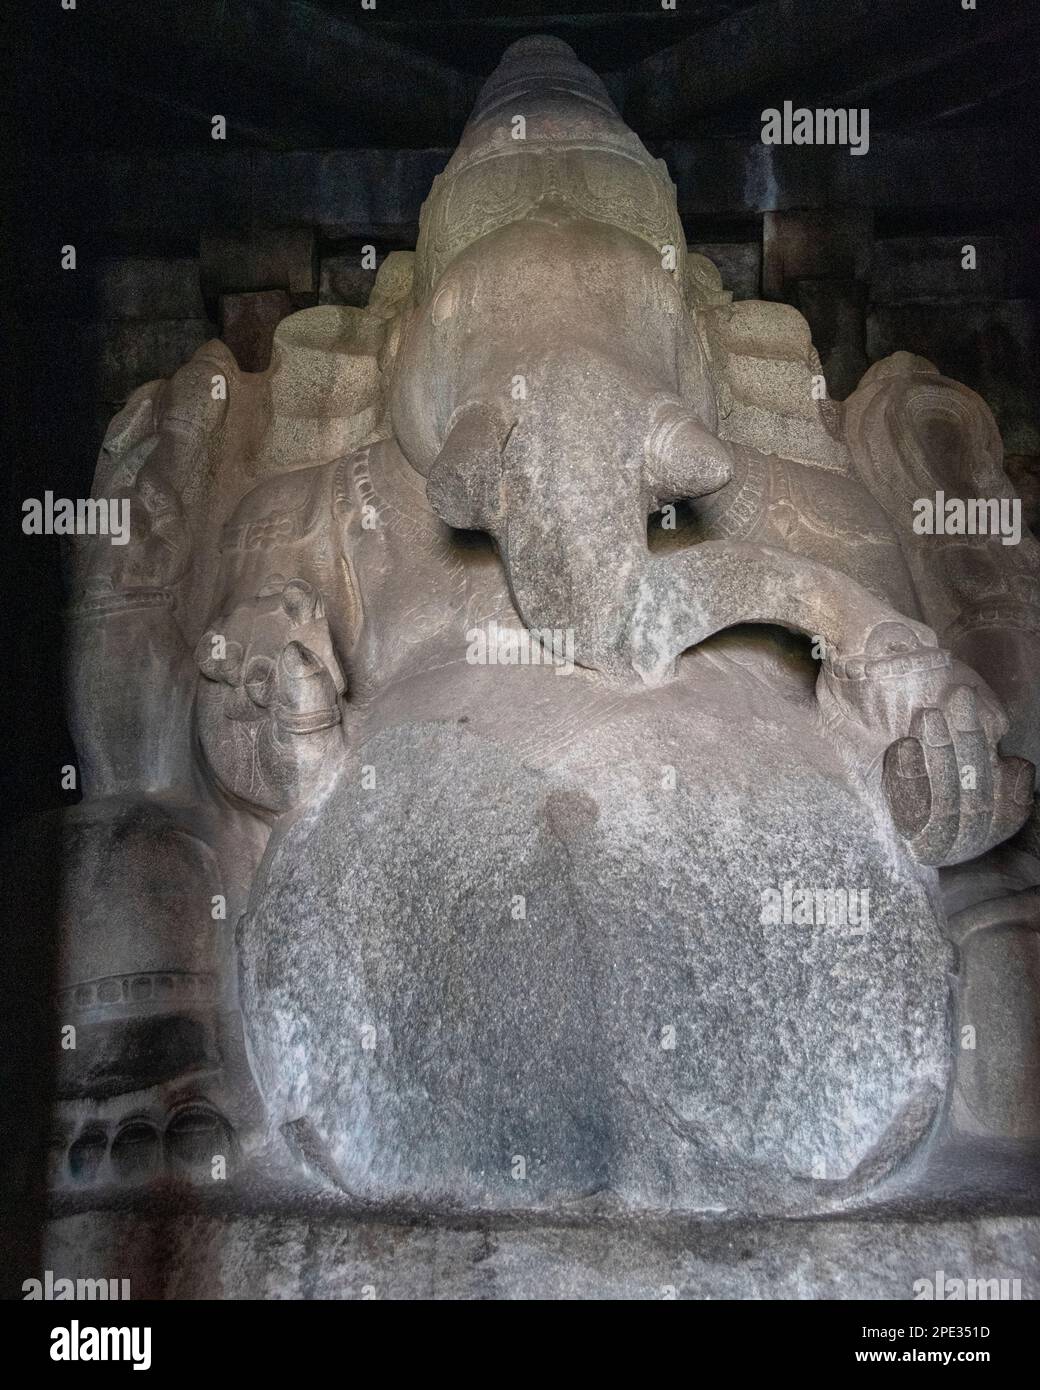 Le temple de Kadalekalu Ganesha à Hampi a une immense statue de Lord Ganesha, sculptée dans un seul bloc de roche. Hampi, la capitale de l'empi de Vijayanagar Banque D'Images